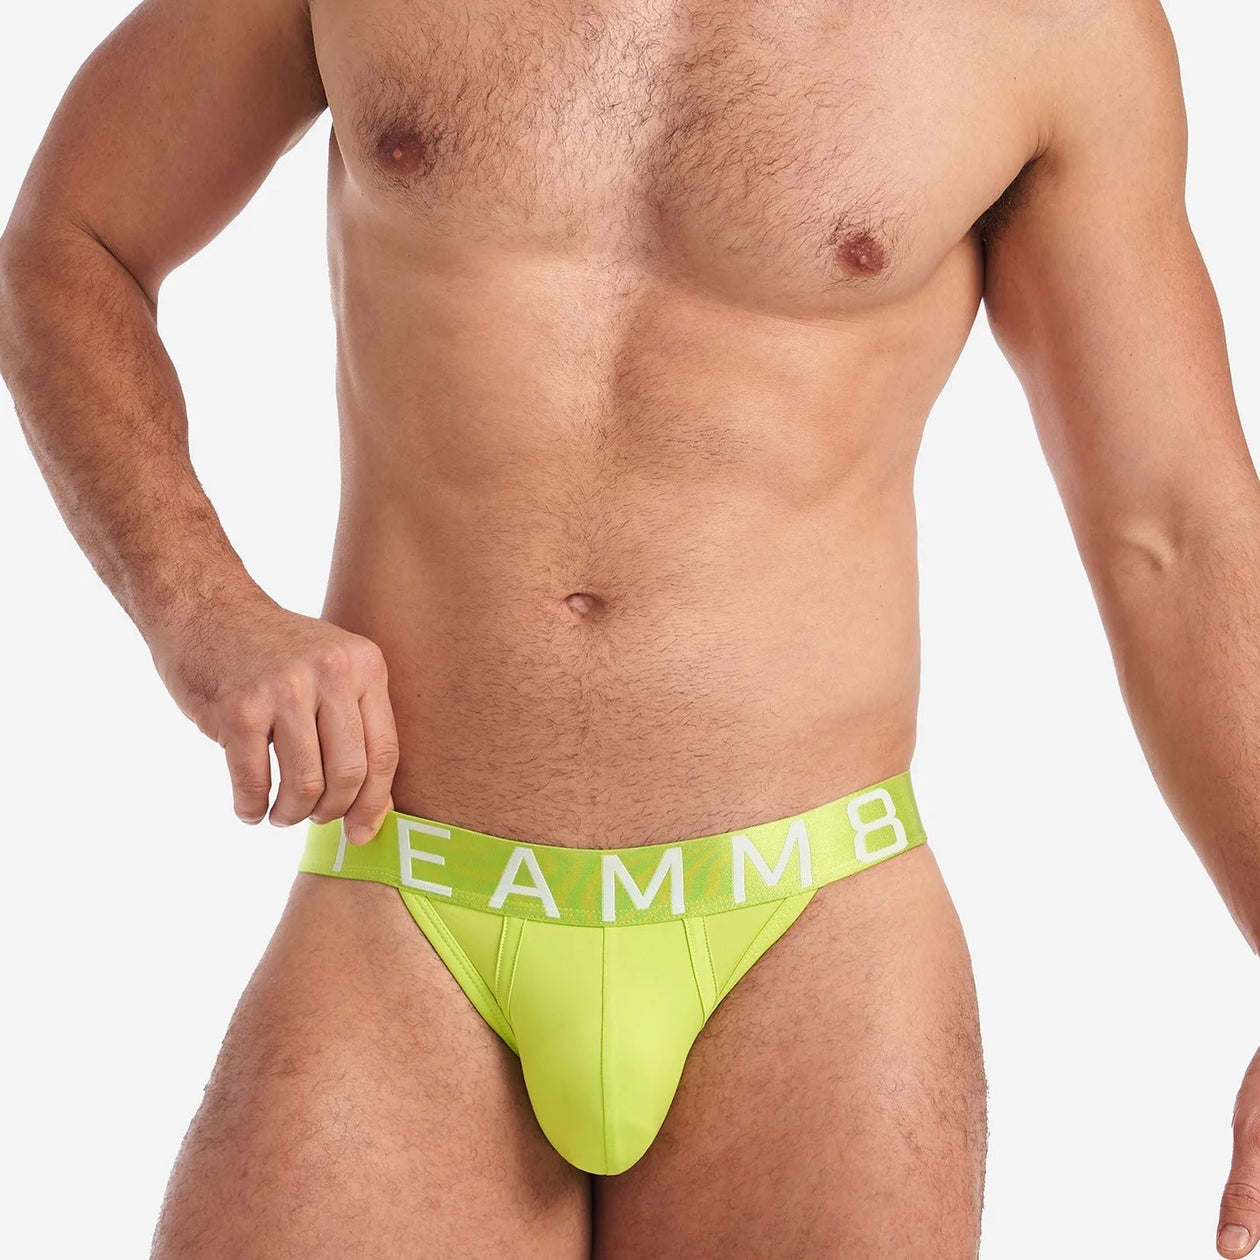 Teamm8 Spartacus brief hot pink – Egoist Underwear